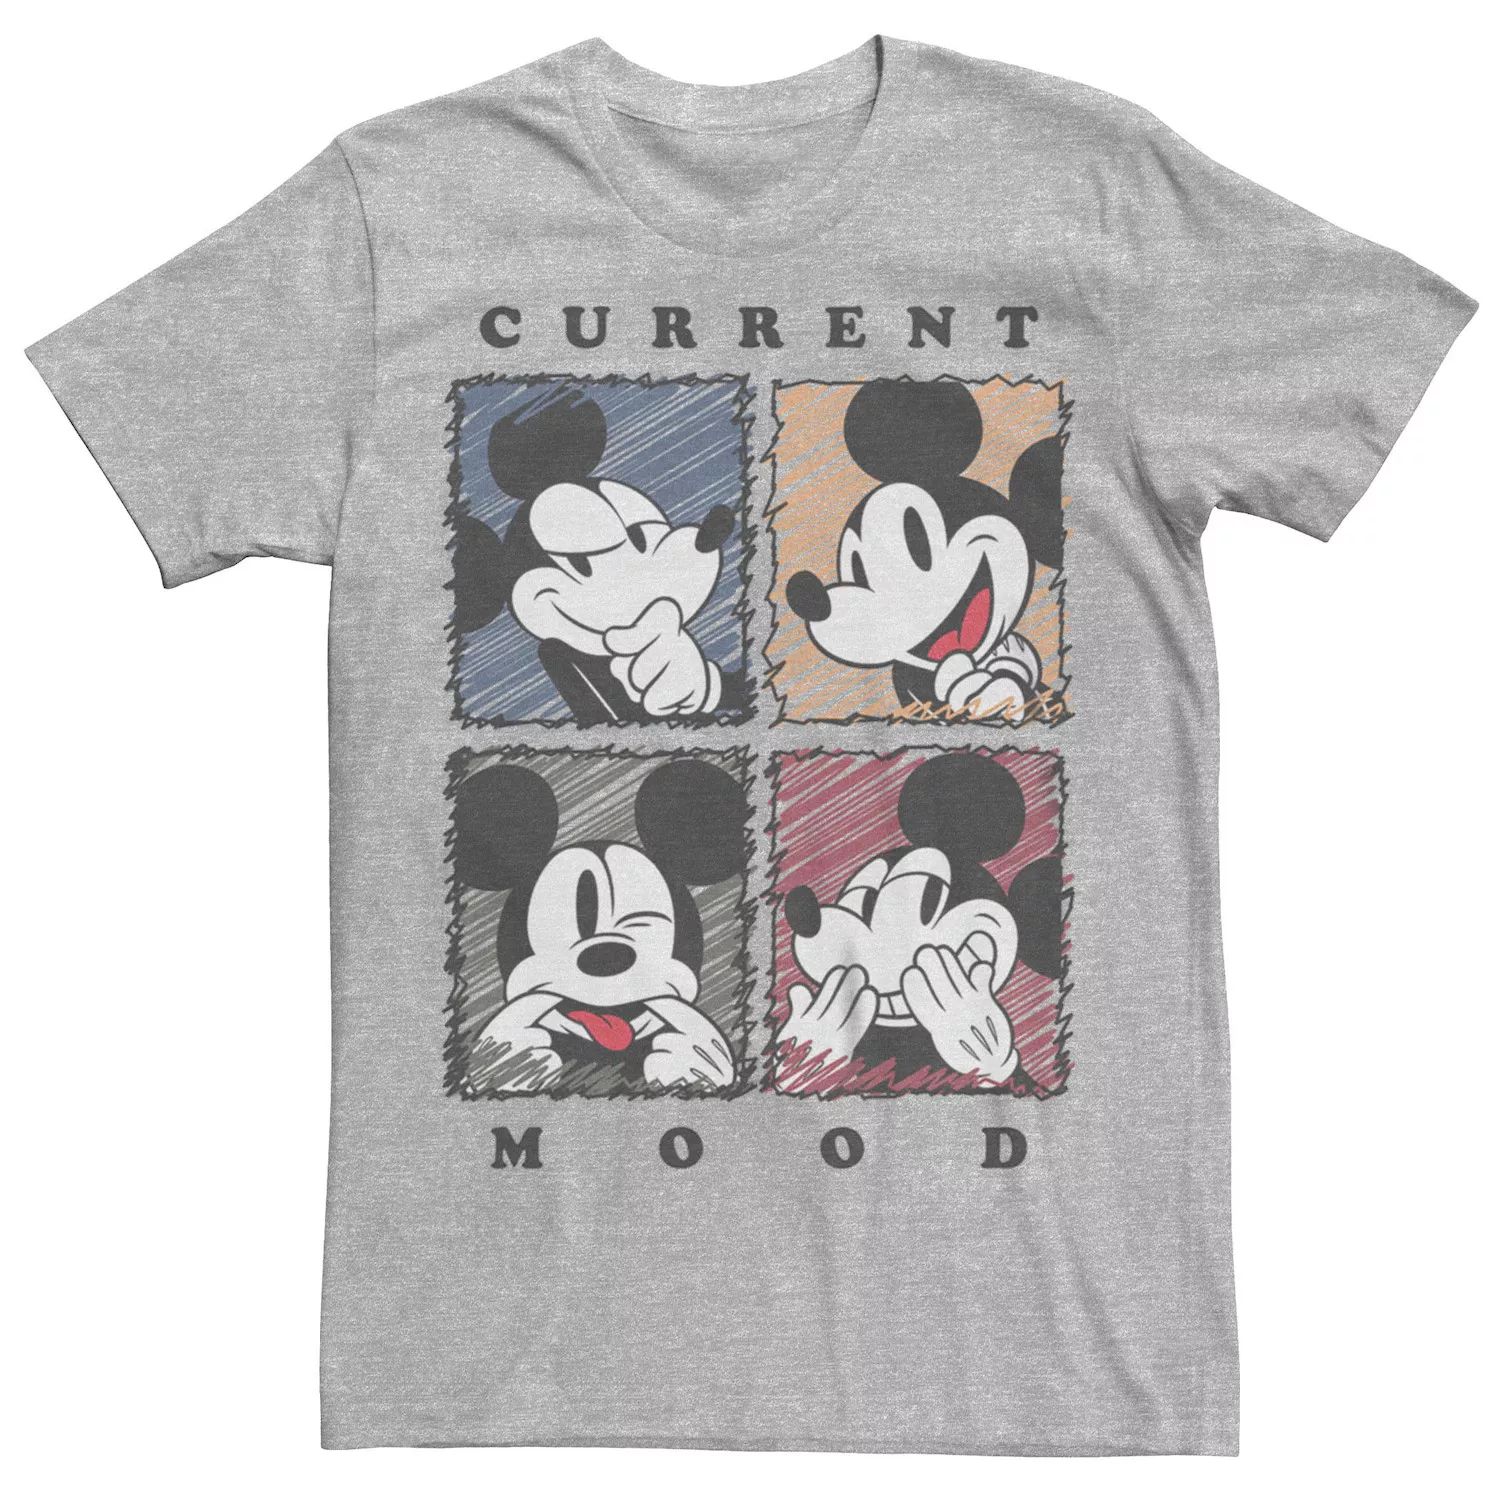 Мужская футболка Current Mood с Микки Маусом Disney Licensed Character